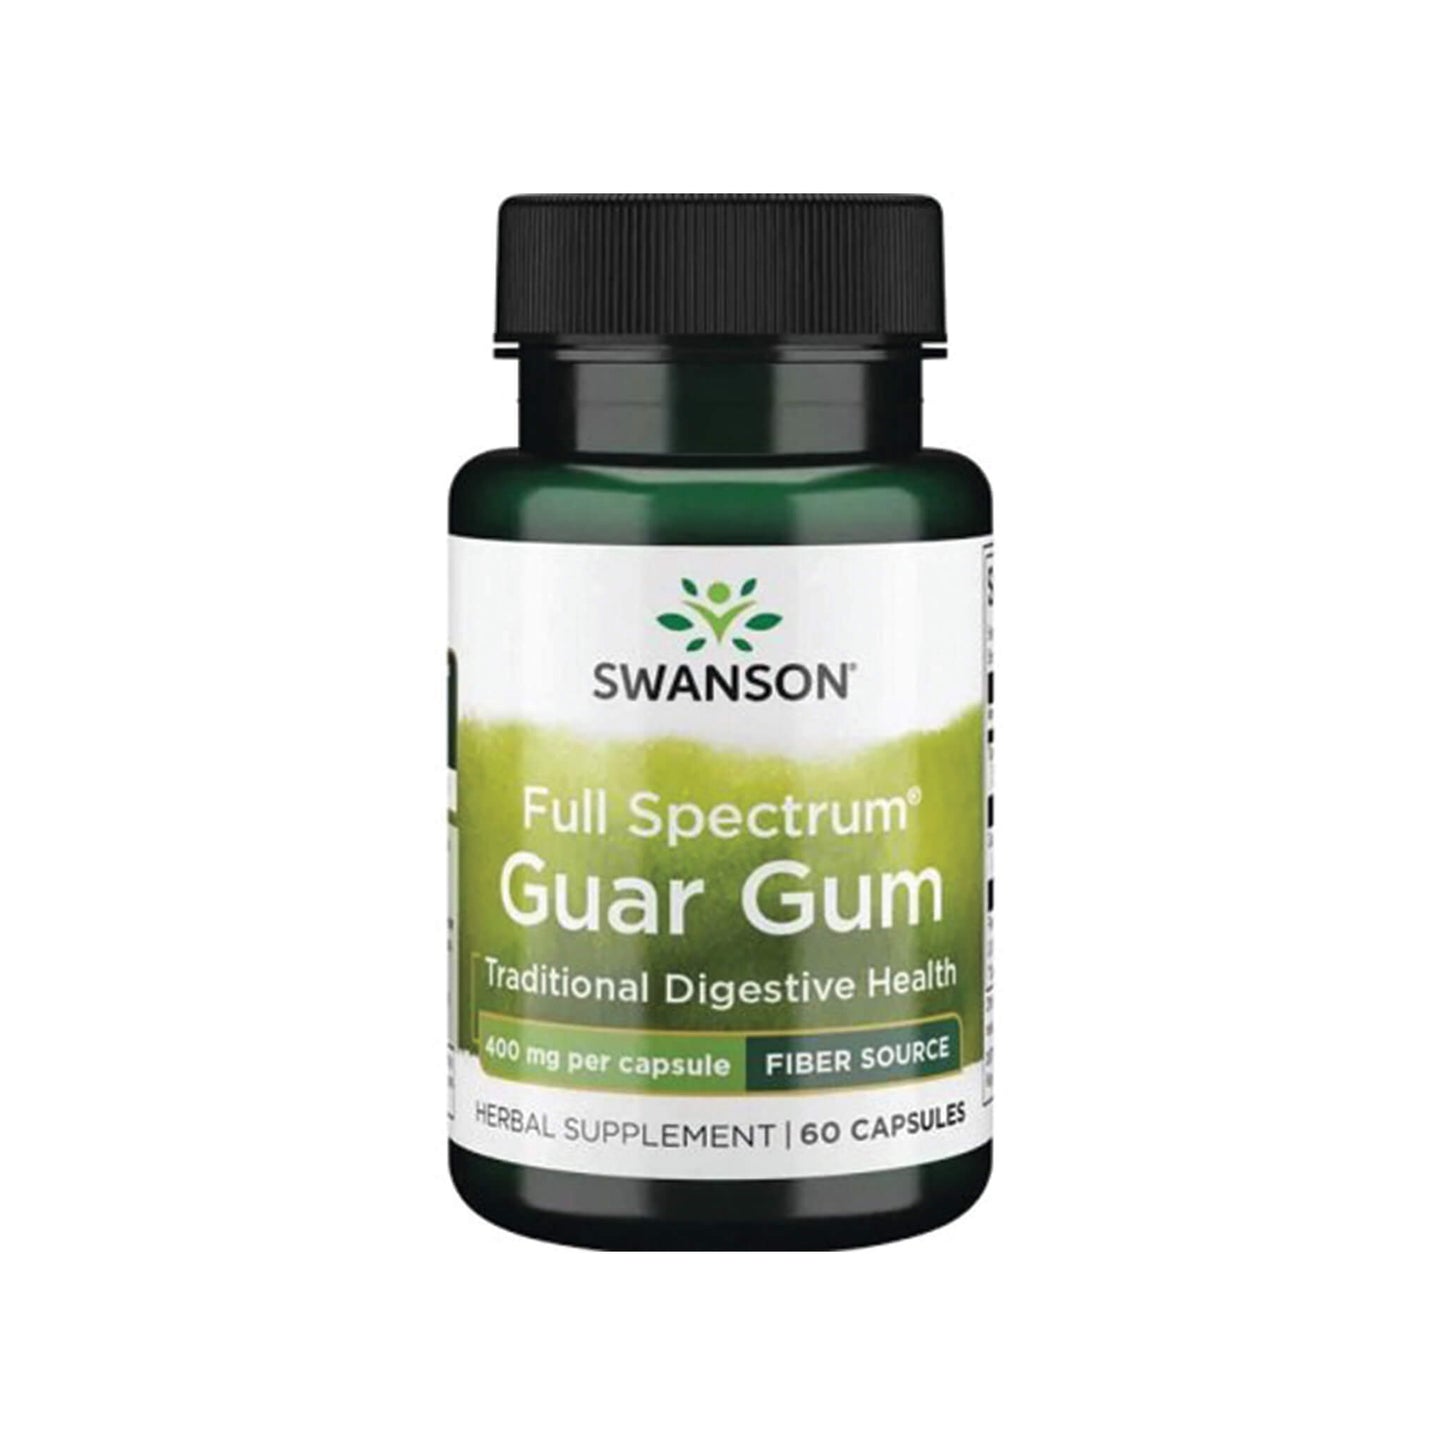 Swanson Full Spectrum Guar Gum, 400 mg - 60 Capsules